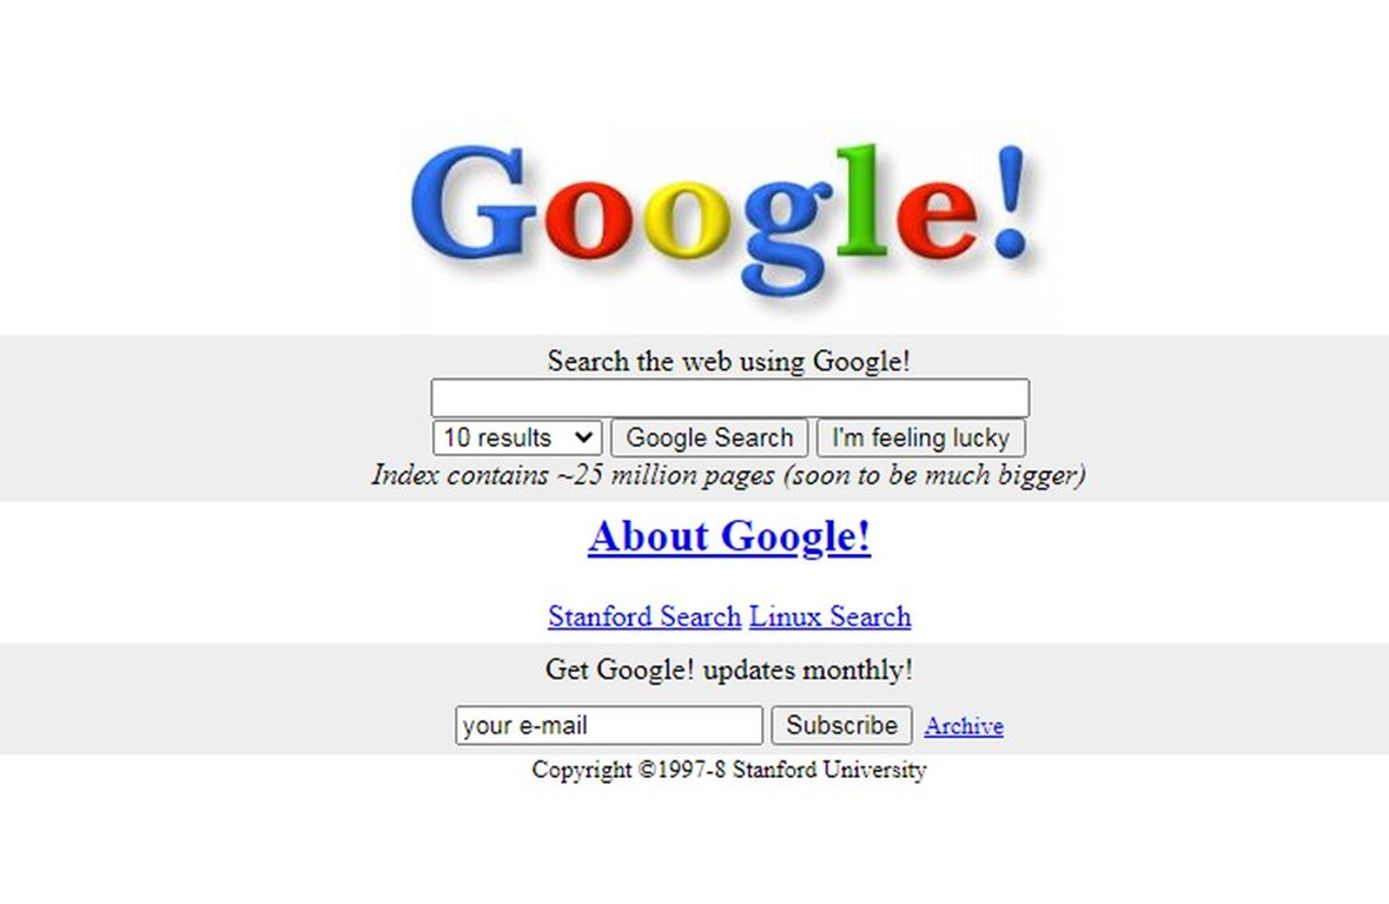 google.com el día 11 de noviembre de 1998. Internet Archive